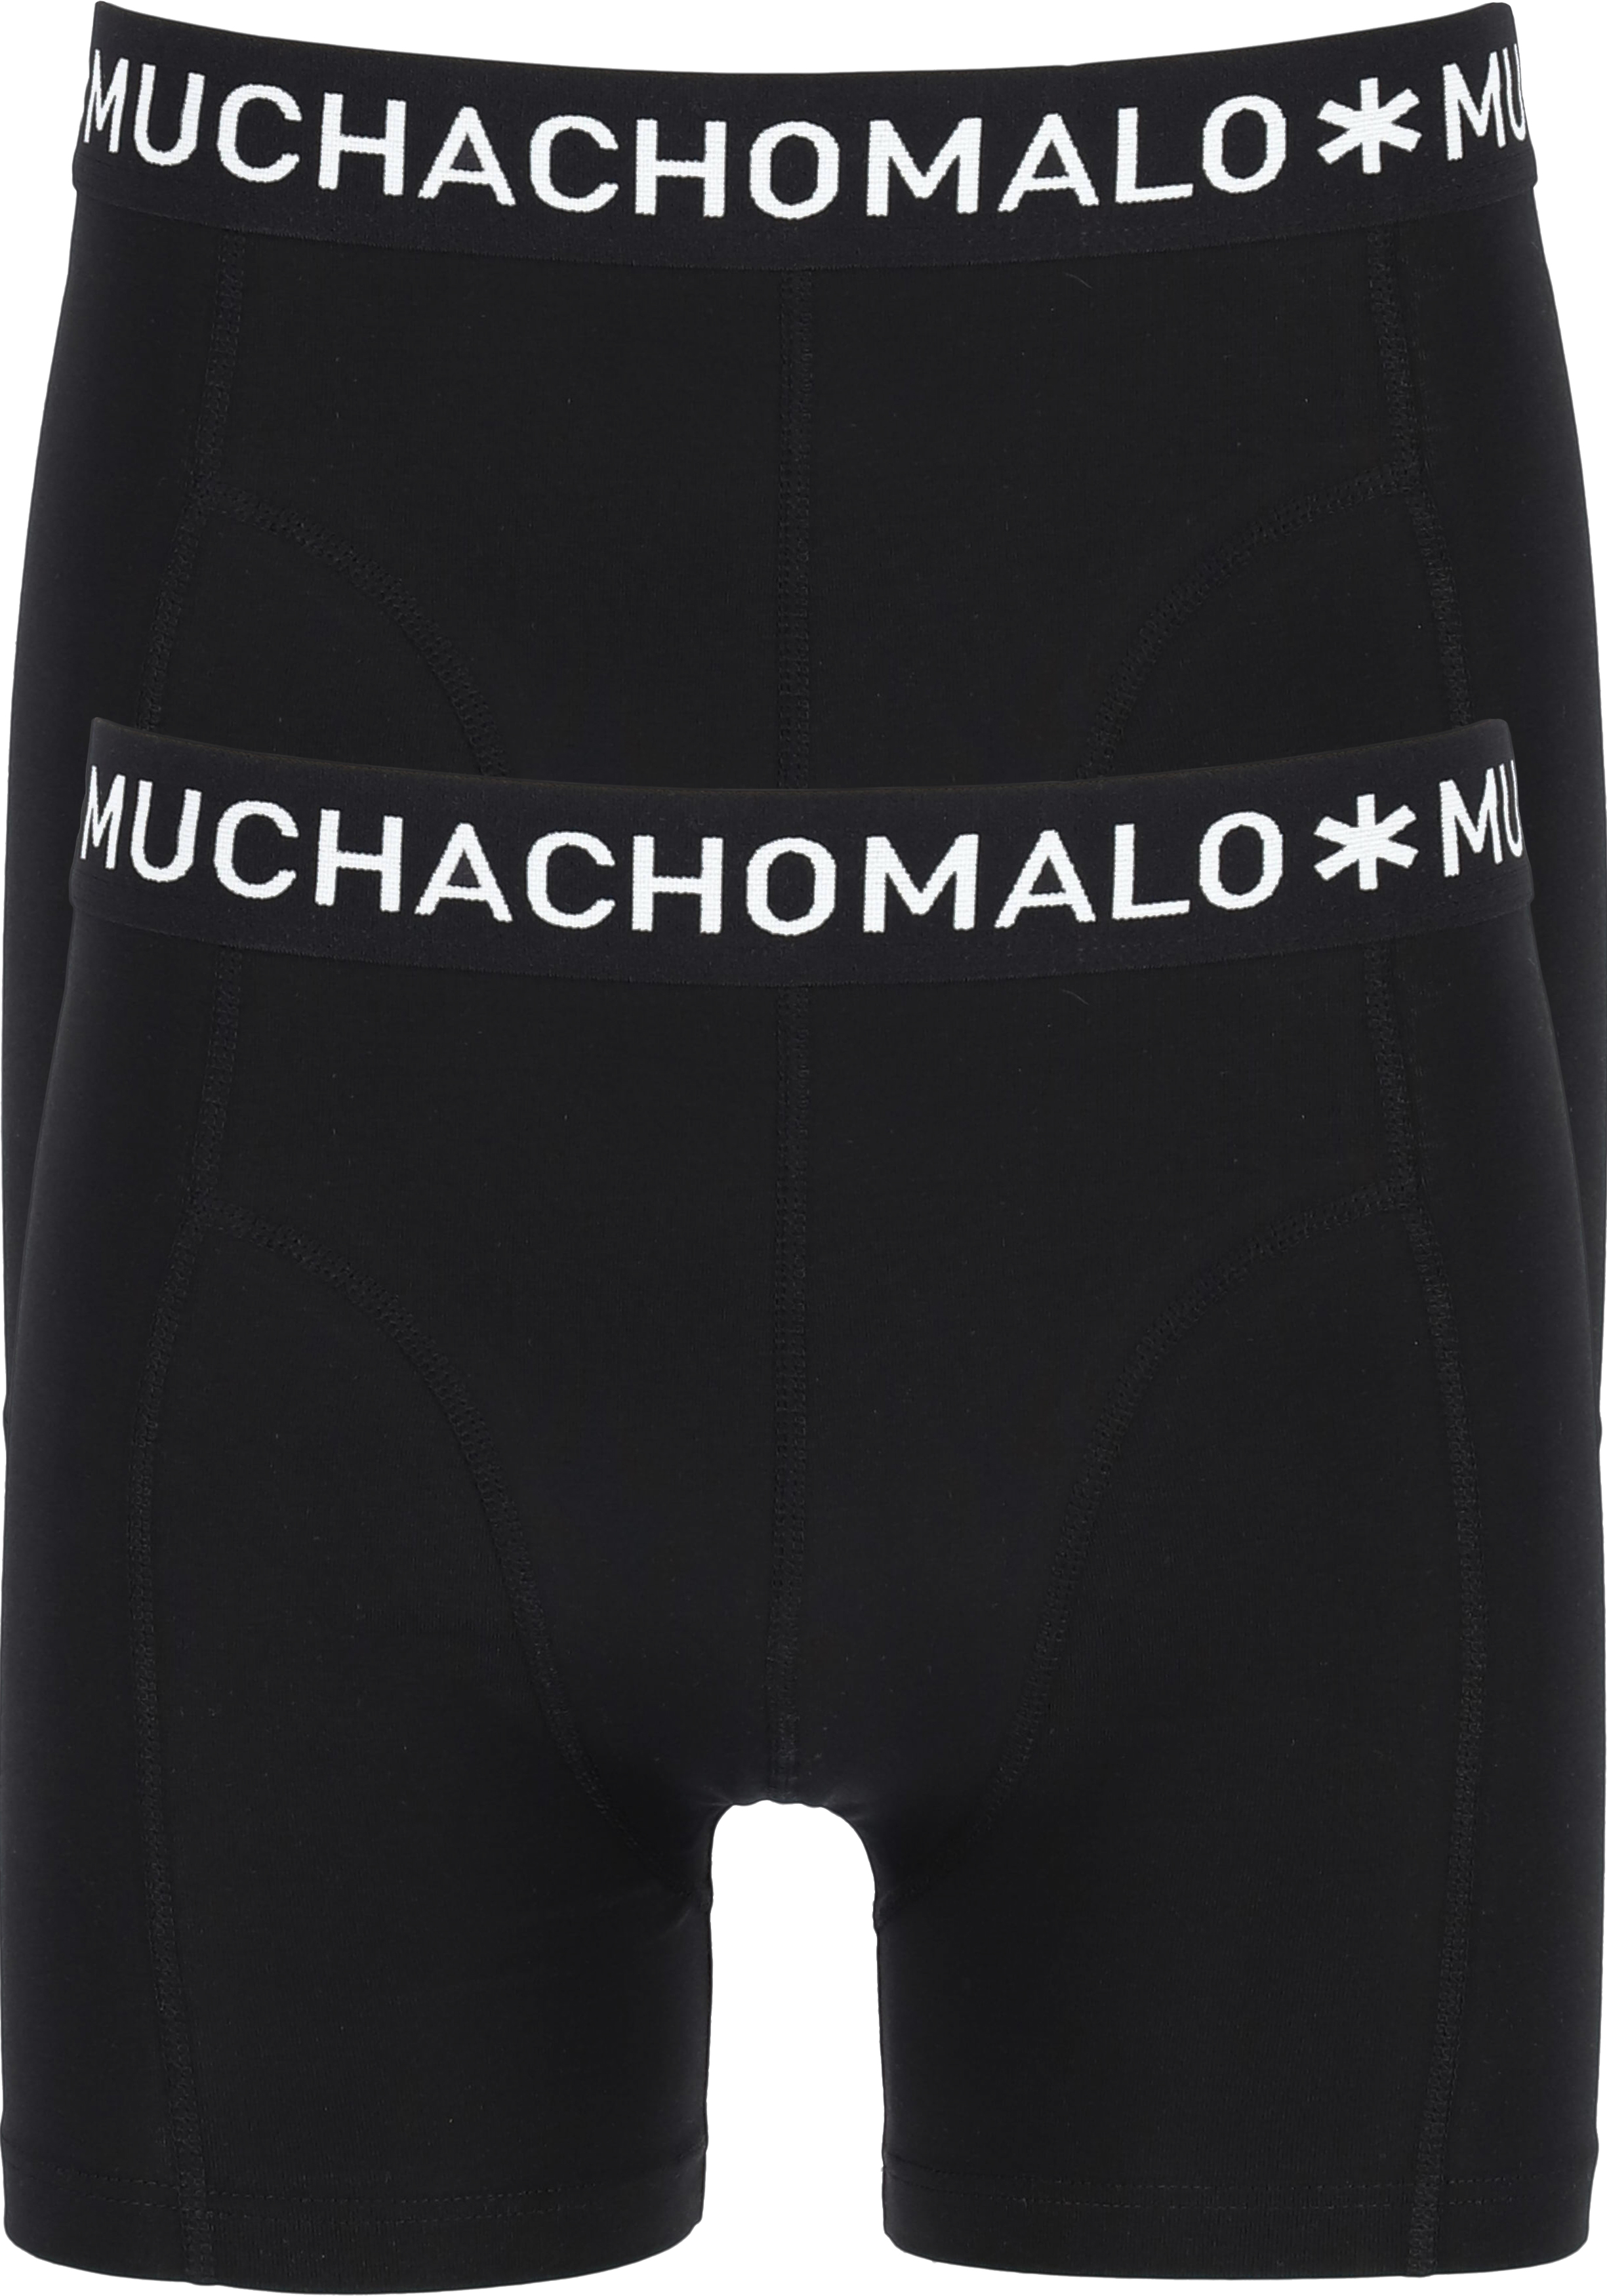 onwetendheid capsule Wereldrecord Guinness Book Muchachomalo boxershorts, 2-pack, zwart - Gratis bezorgd